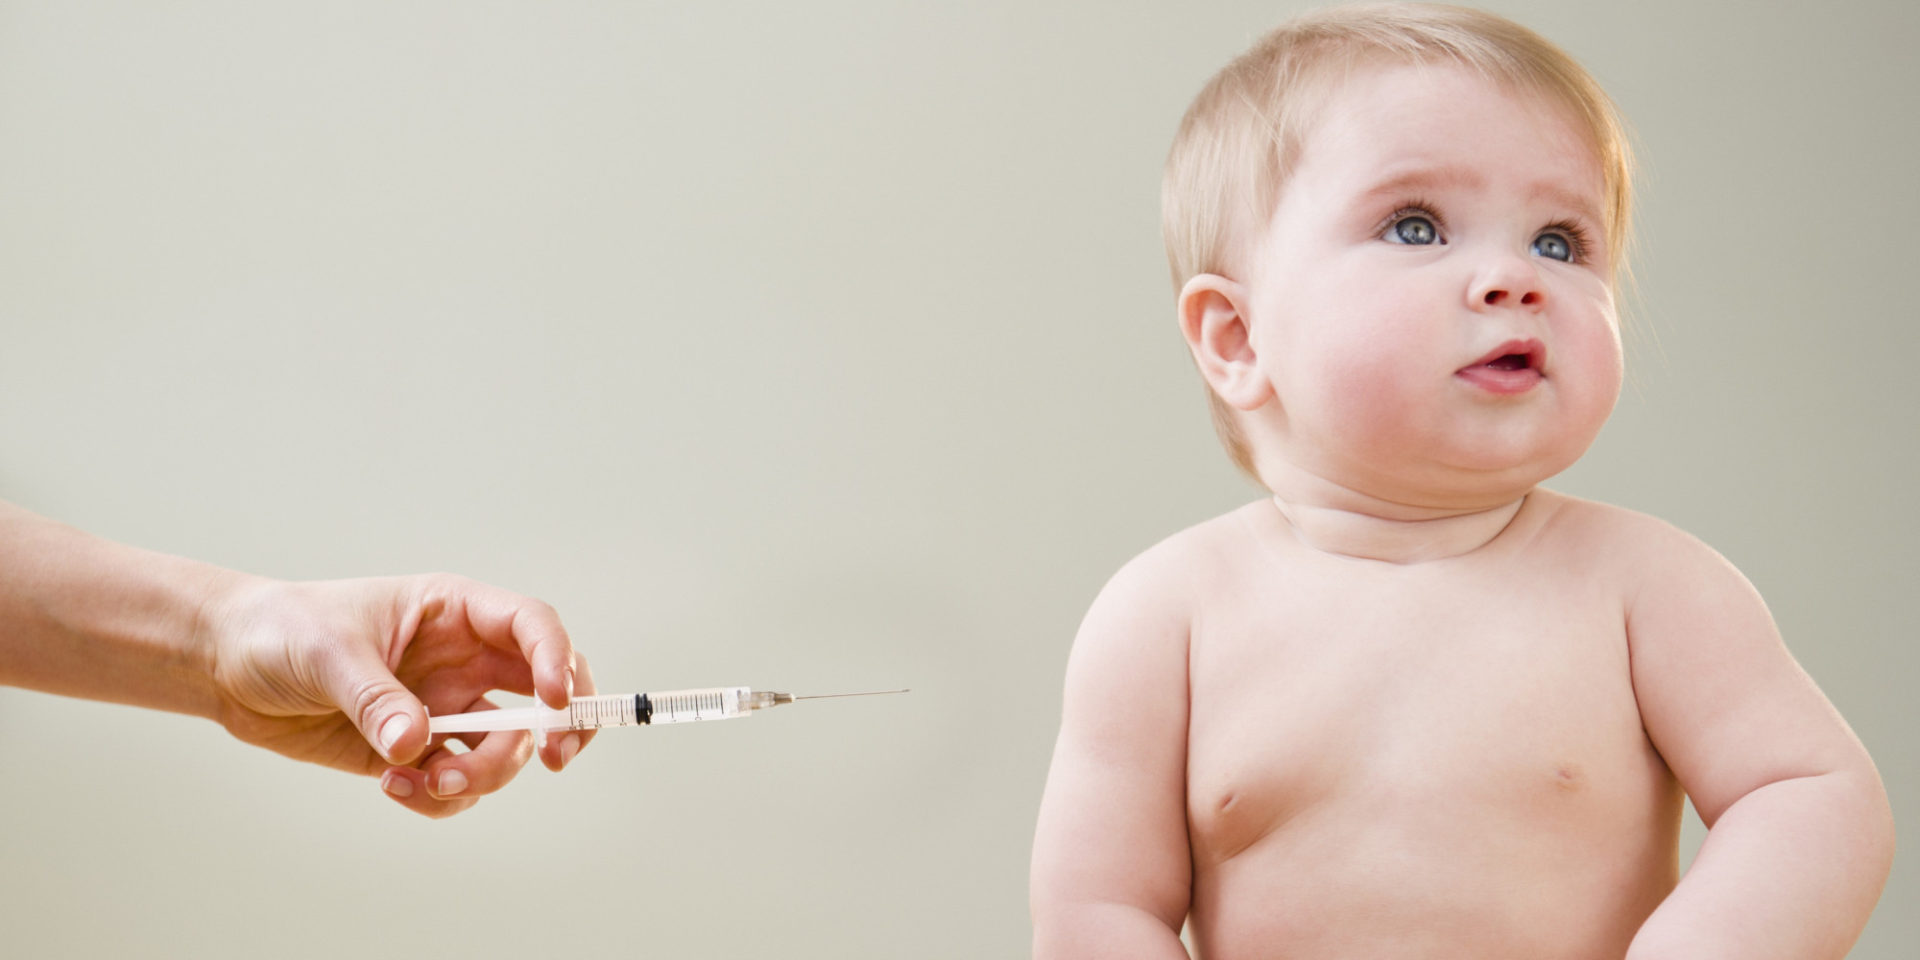 Velika desetogodišnja studija potvrdila MMR vakcine ne uzrokuju autizam